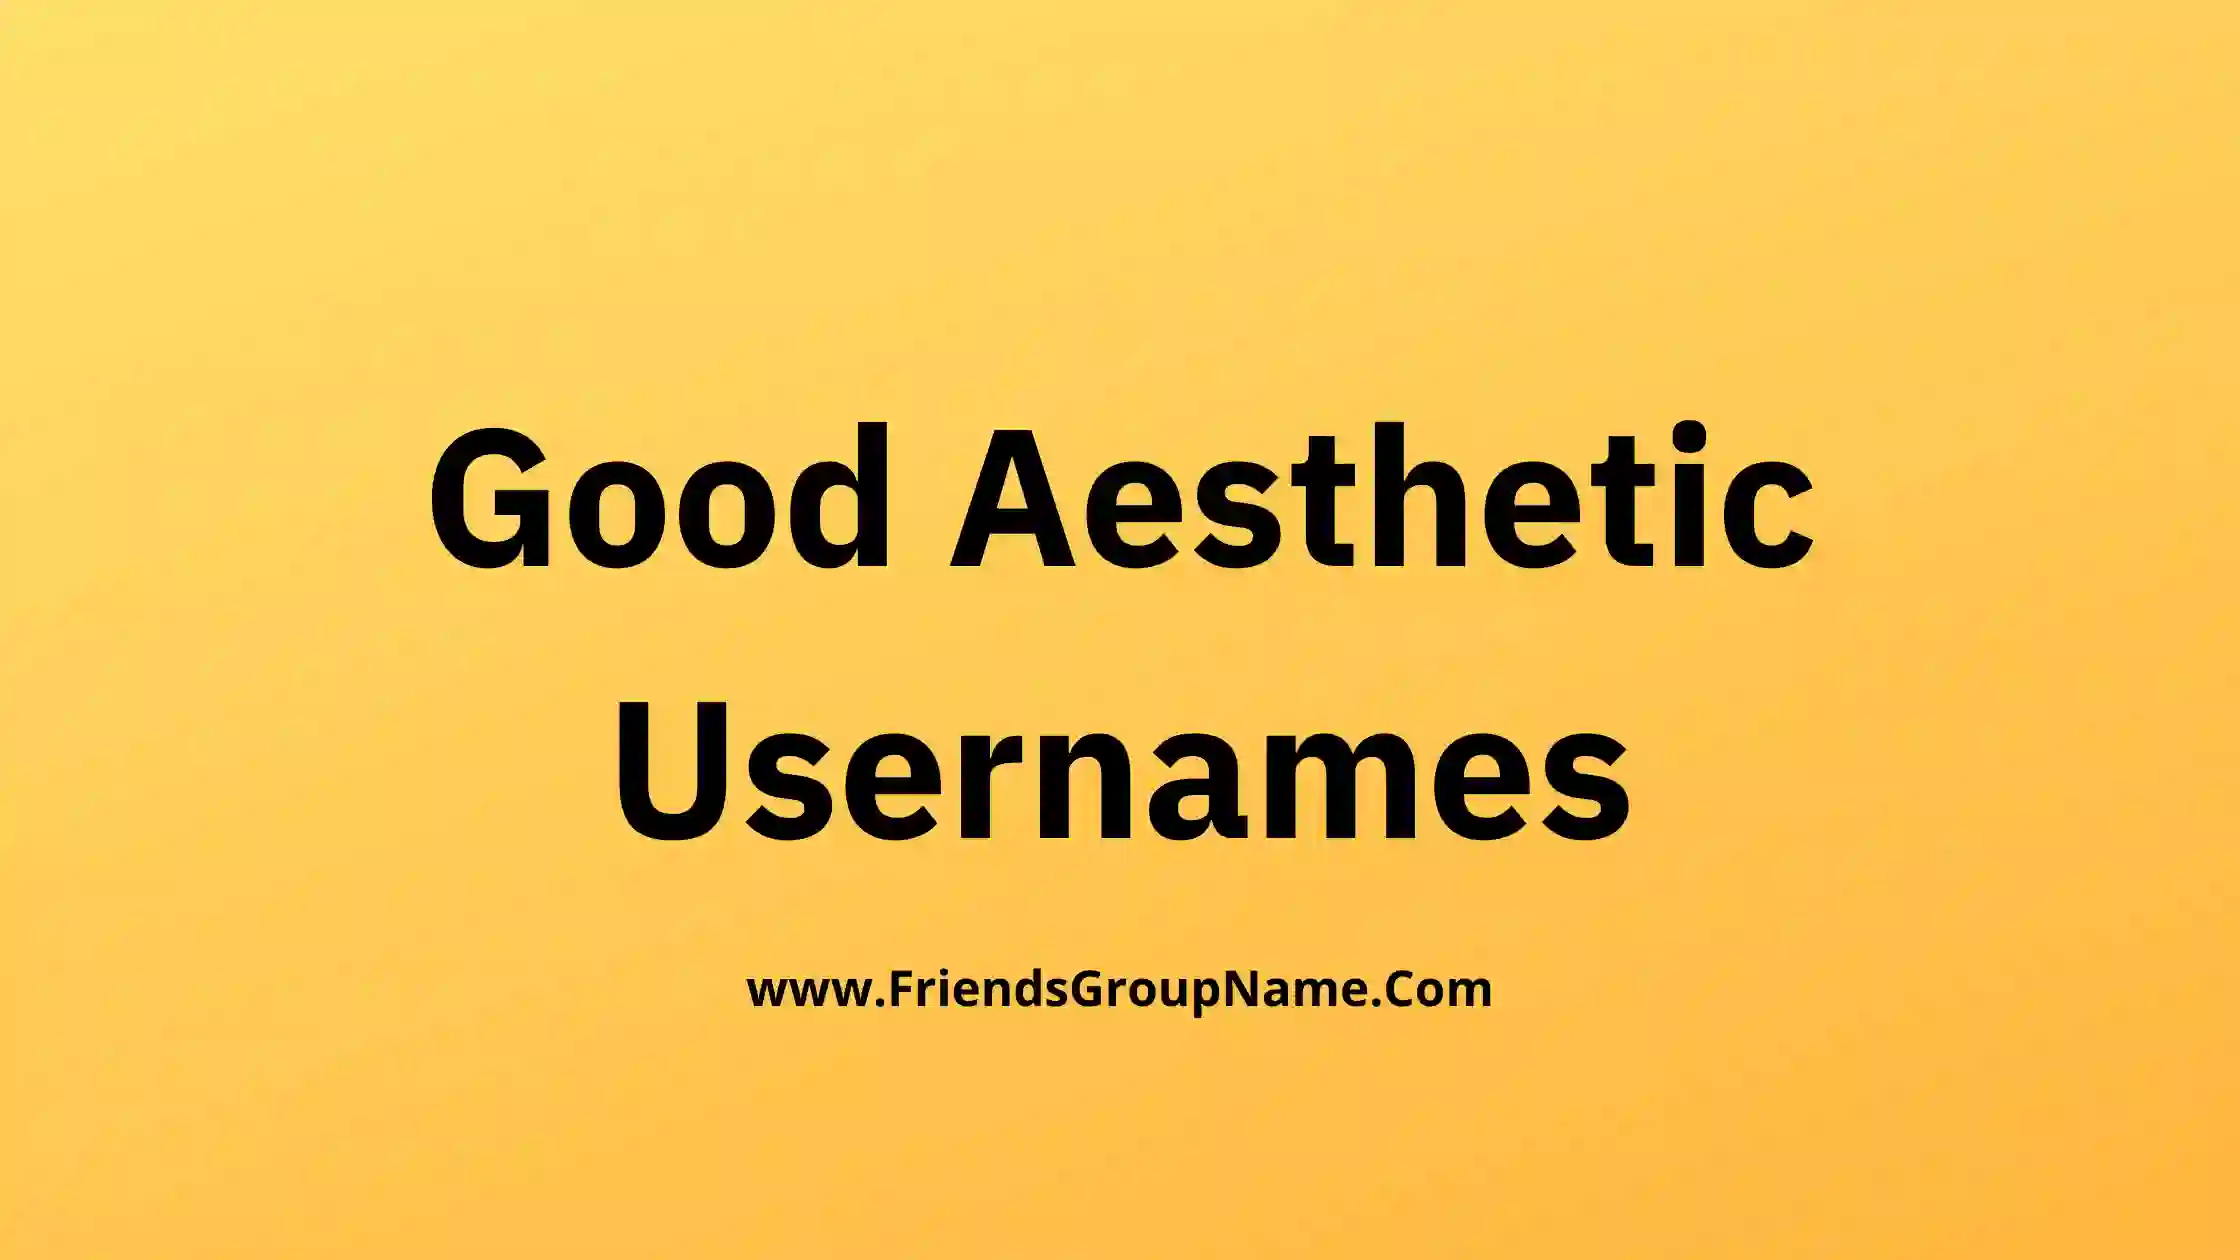 Good Aesthetic Usernames